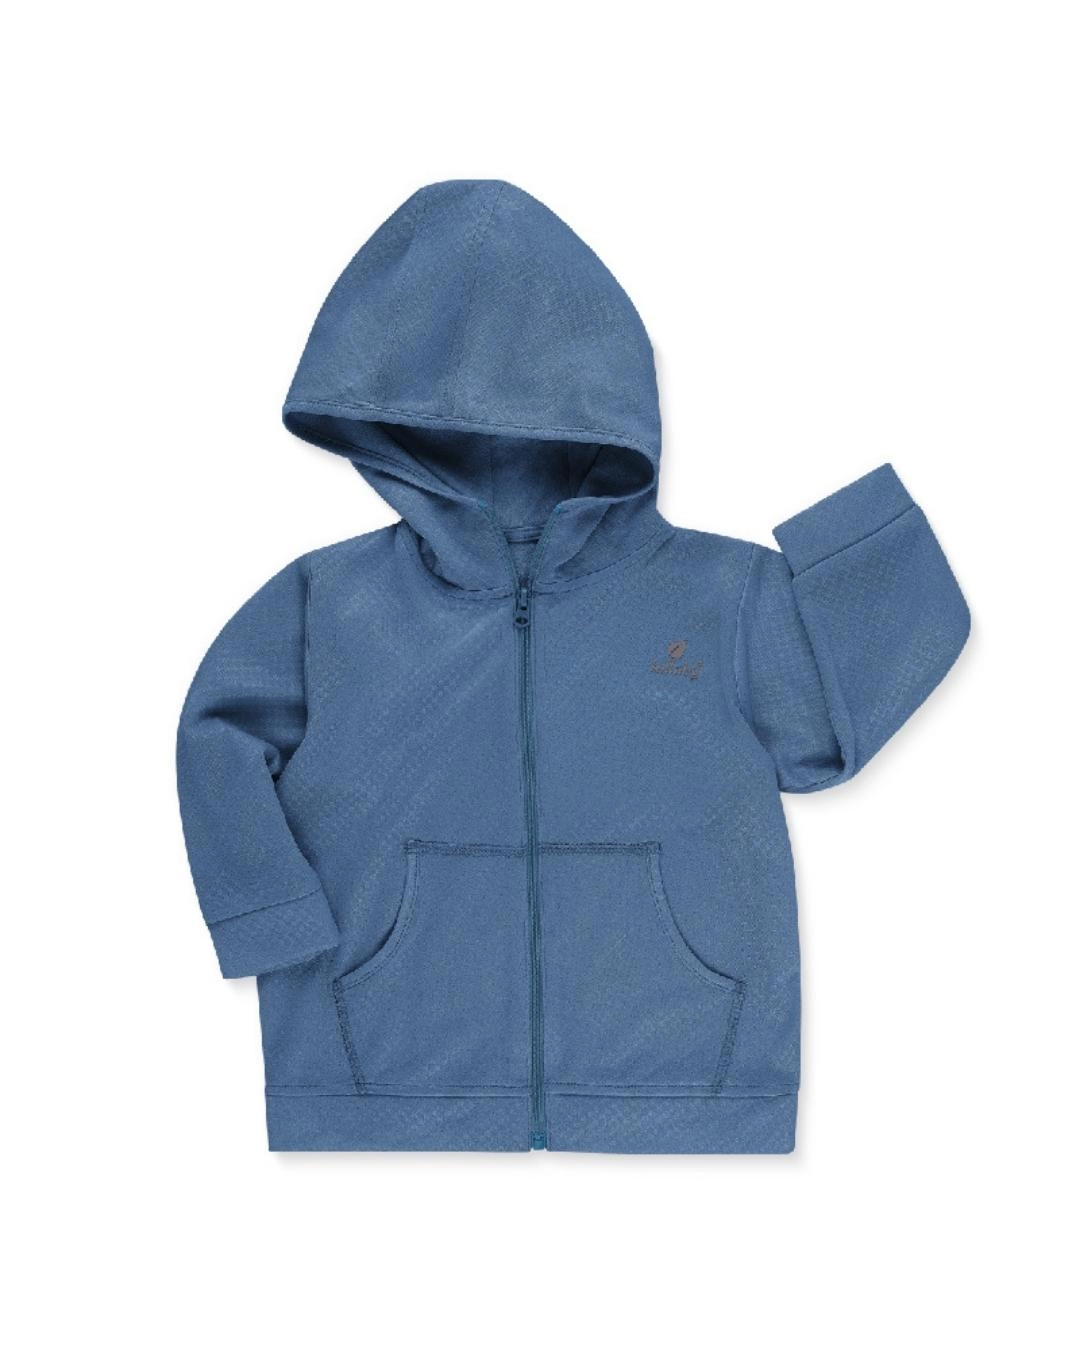 Áo khoác bé trai Lullaby NH329M màu xanh navy-1